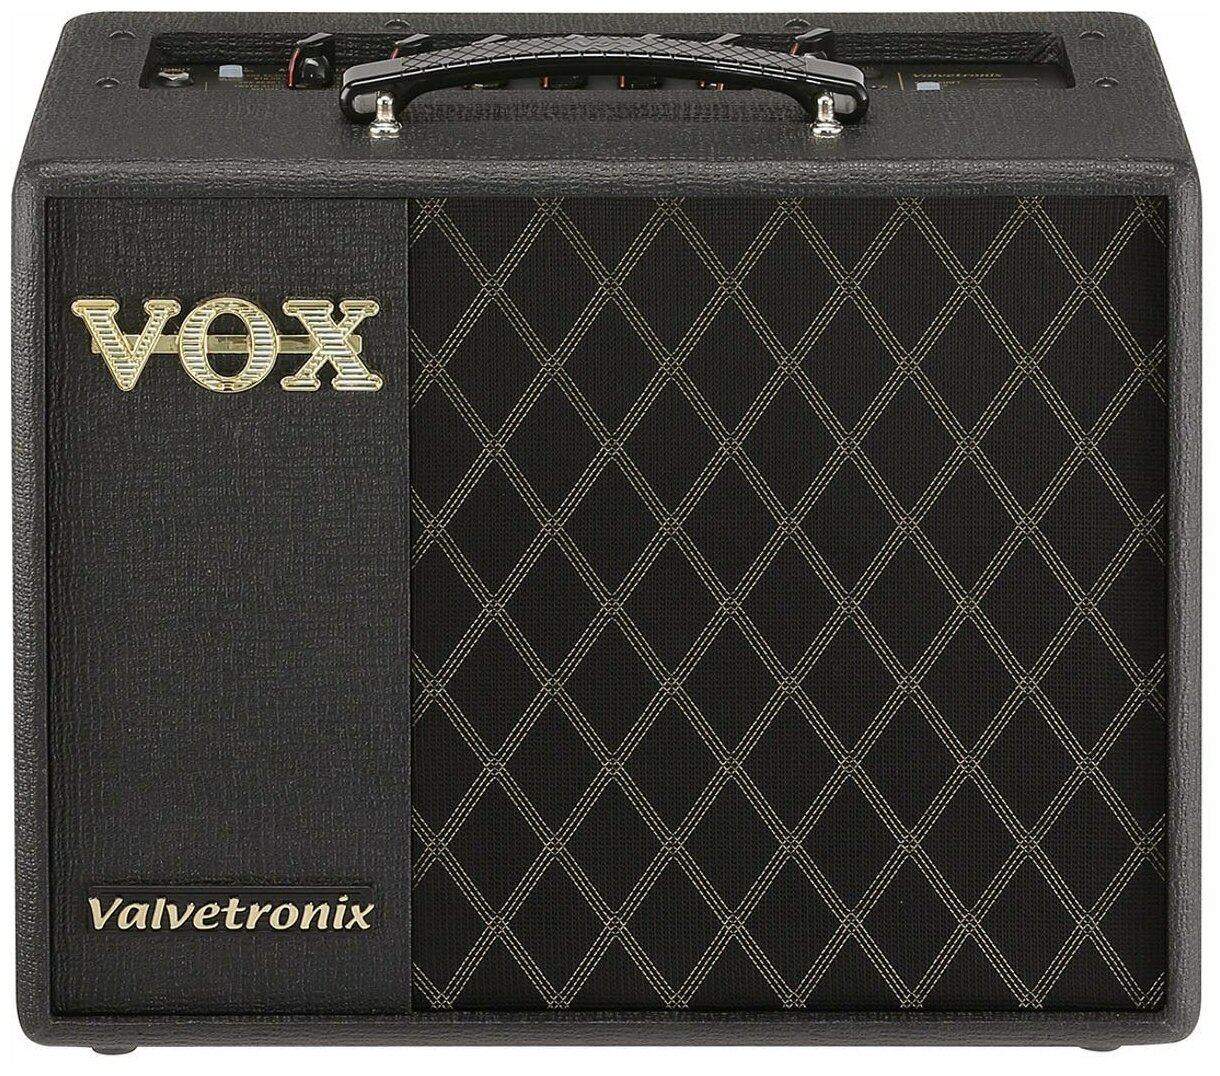 Гитарный комбо VOX VT20X